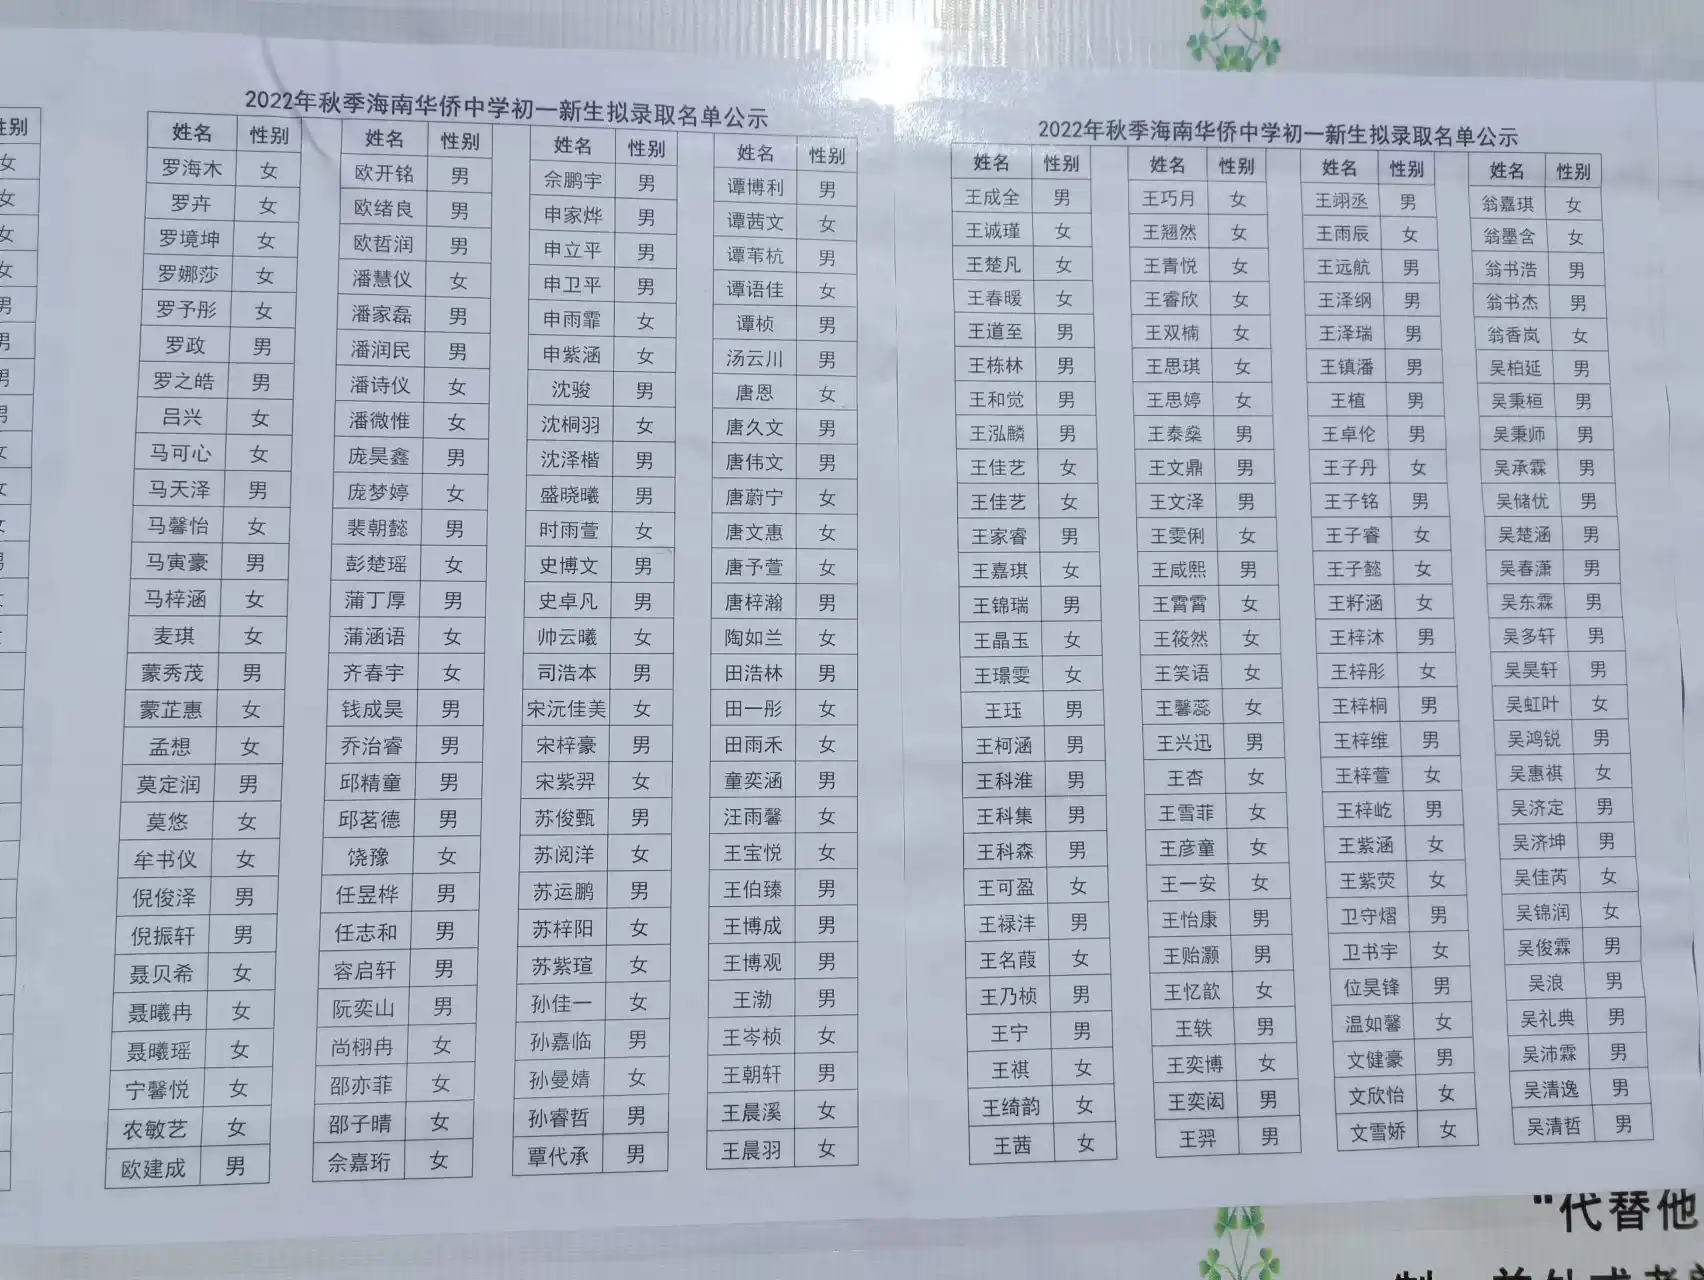 海南华侨中学2022年秋季初一新生录取名单公示